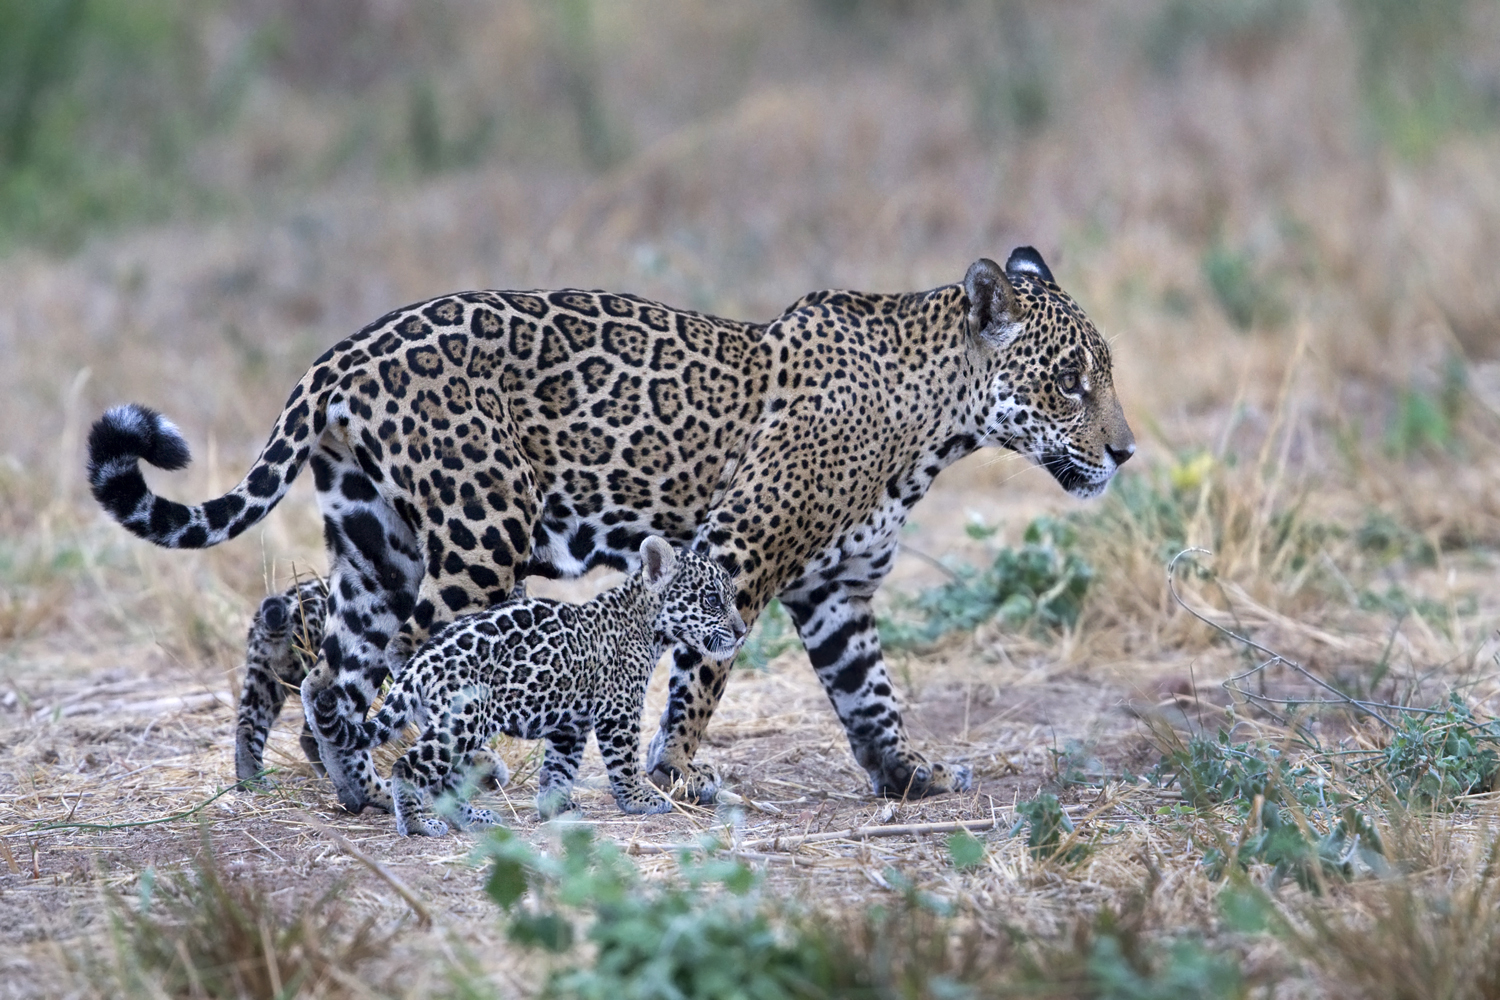 Endangered jaguars in Bolivia captured on camera